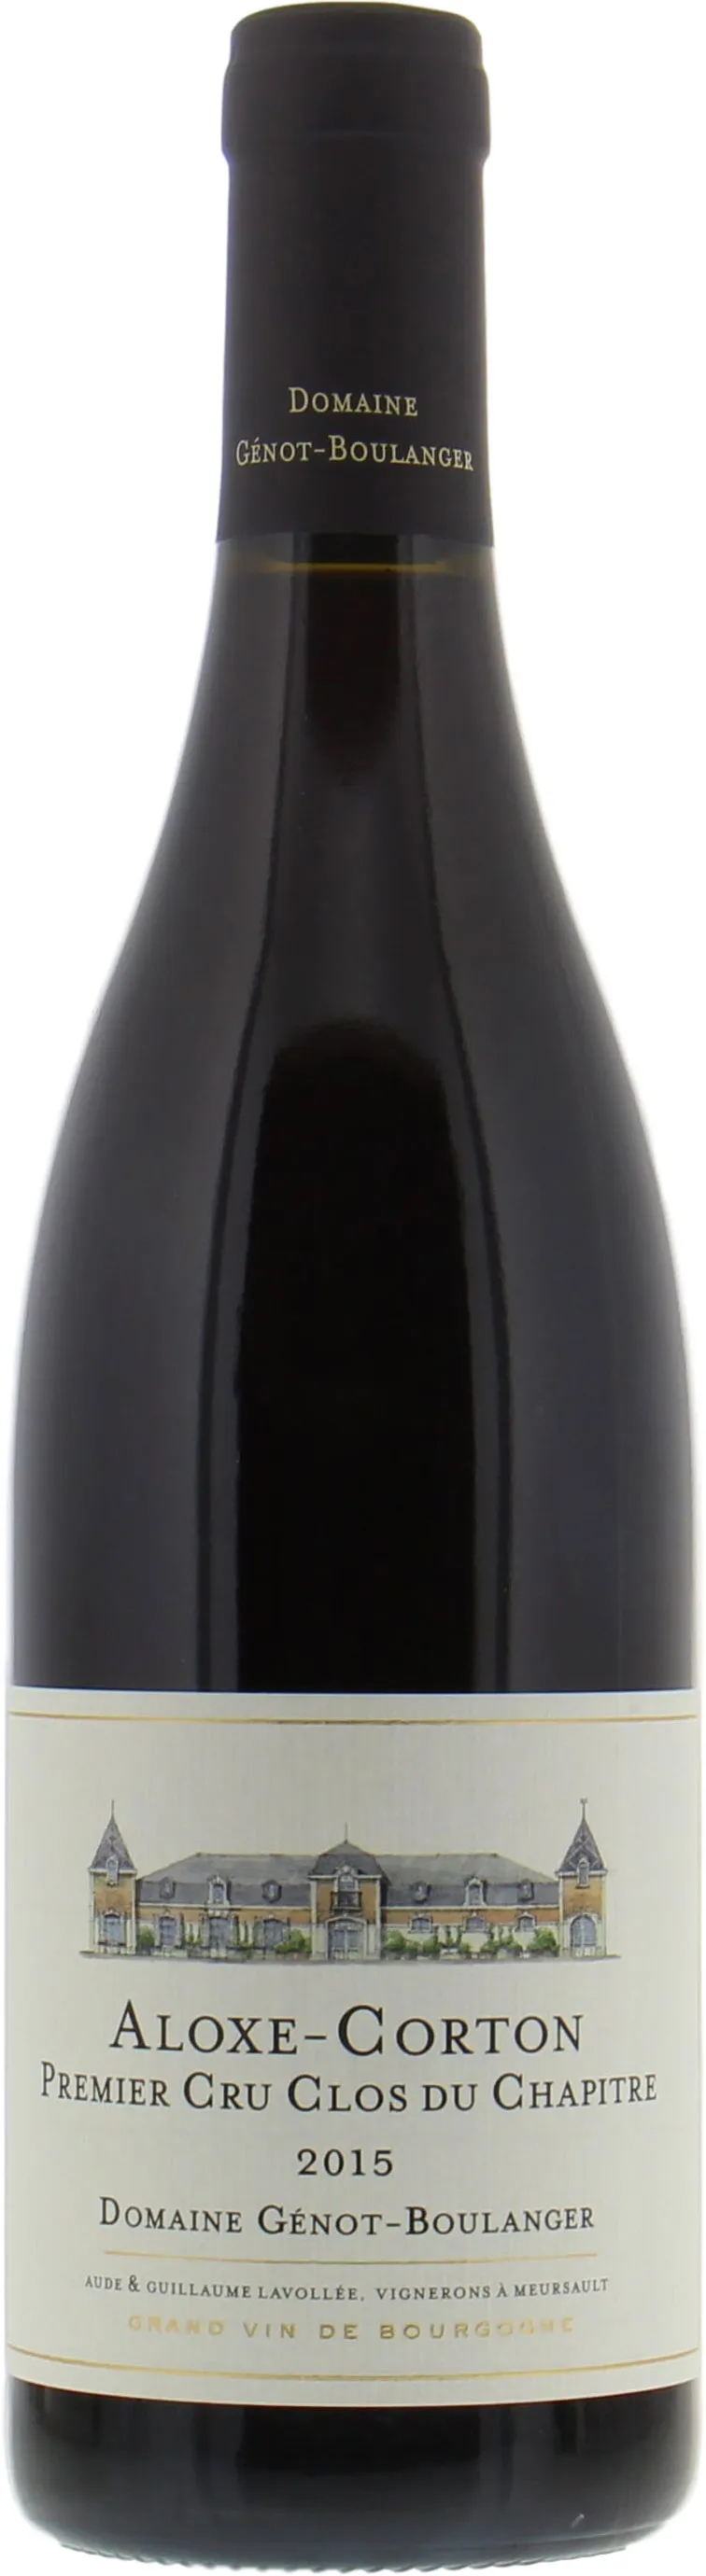 Bottle of Domaine Génot-Boulanger Aloxe-Corton Premier Cru 'Clos du Chapître'with label visible